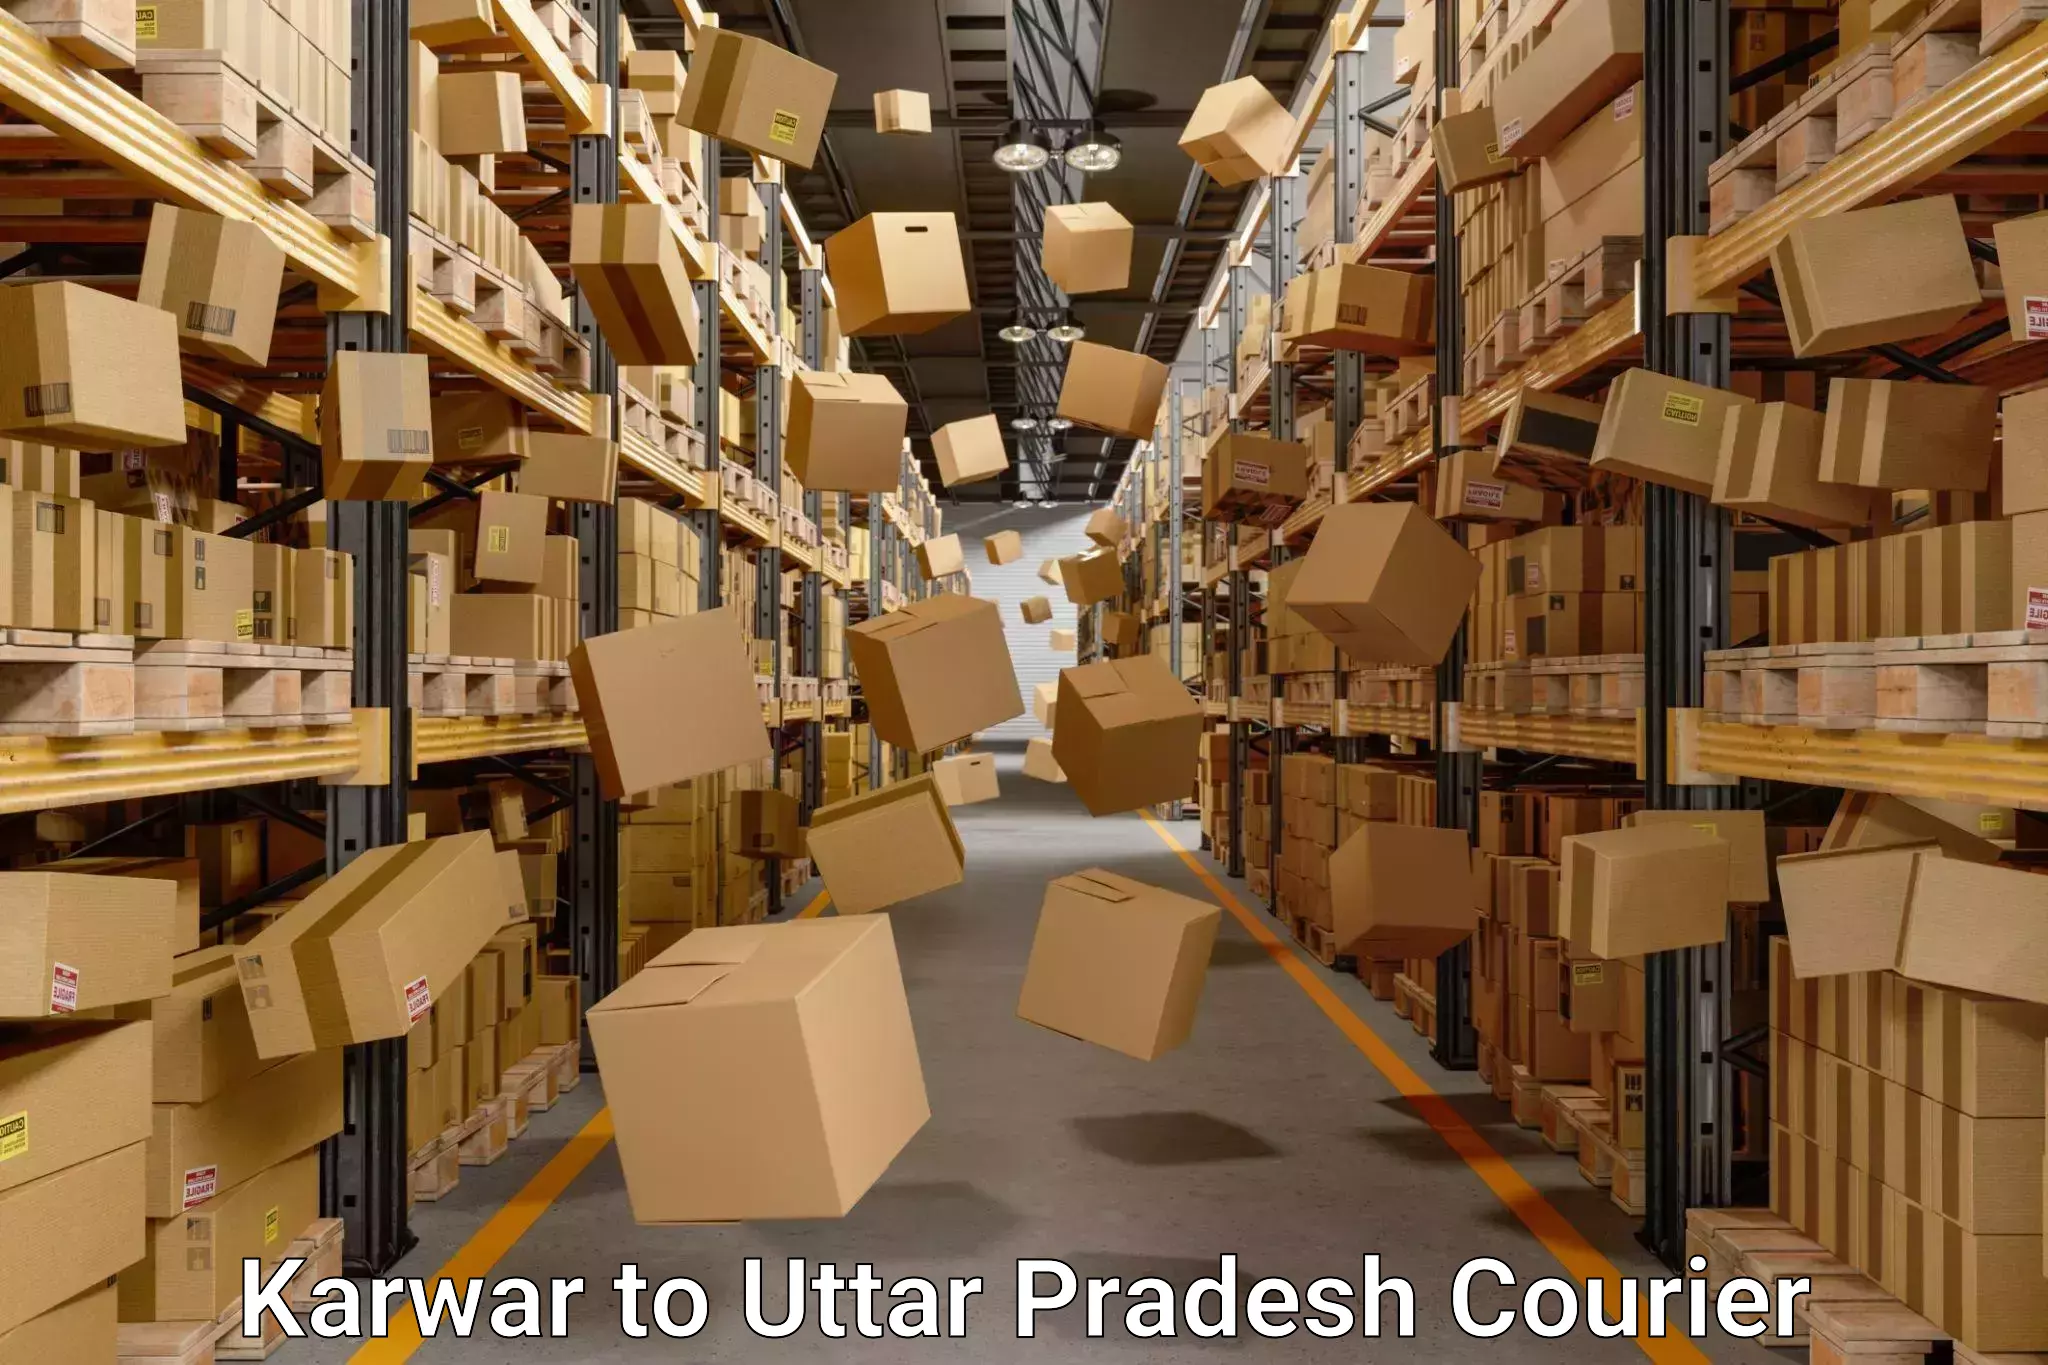 Full-service relocation in Karwar to Uttar Pradesh